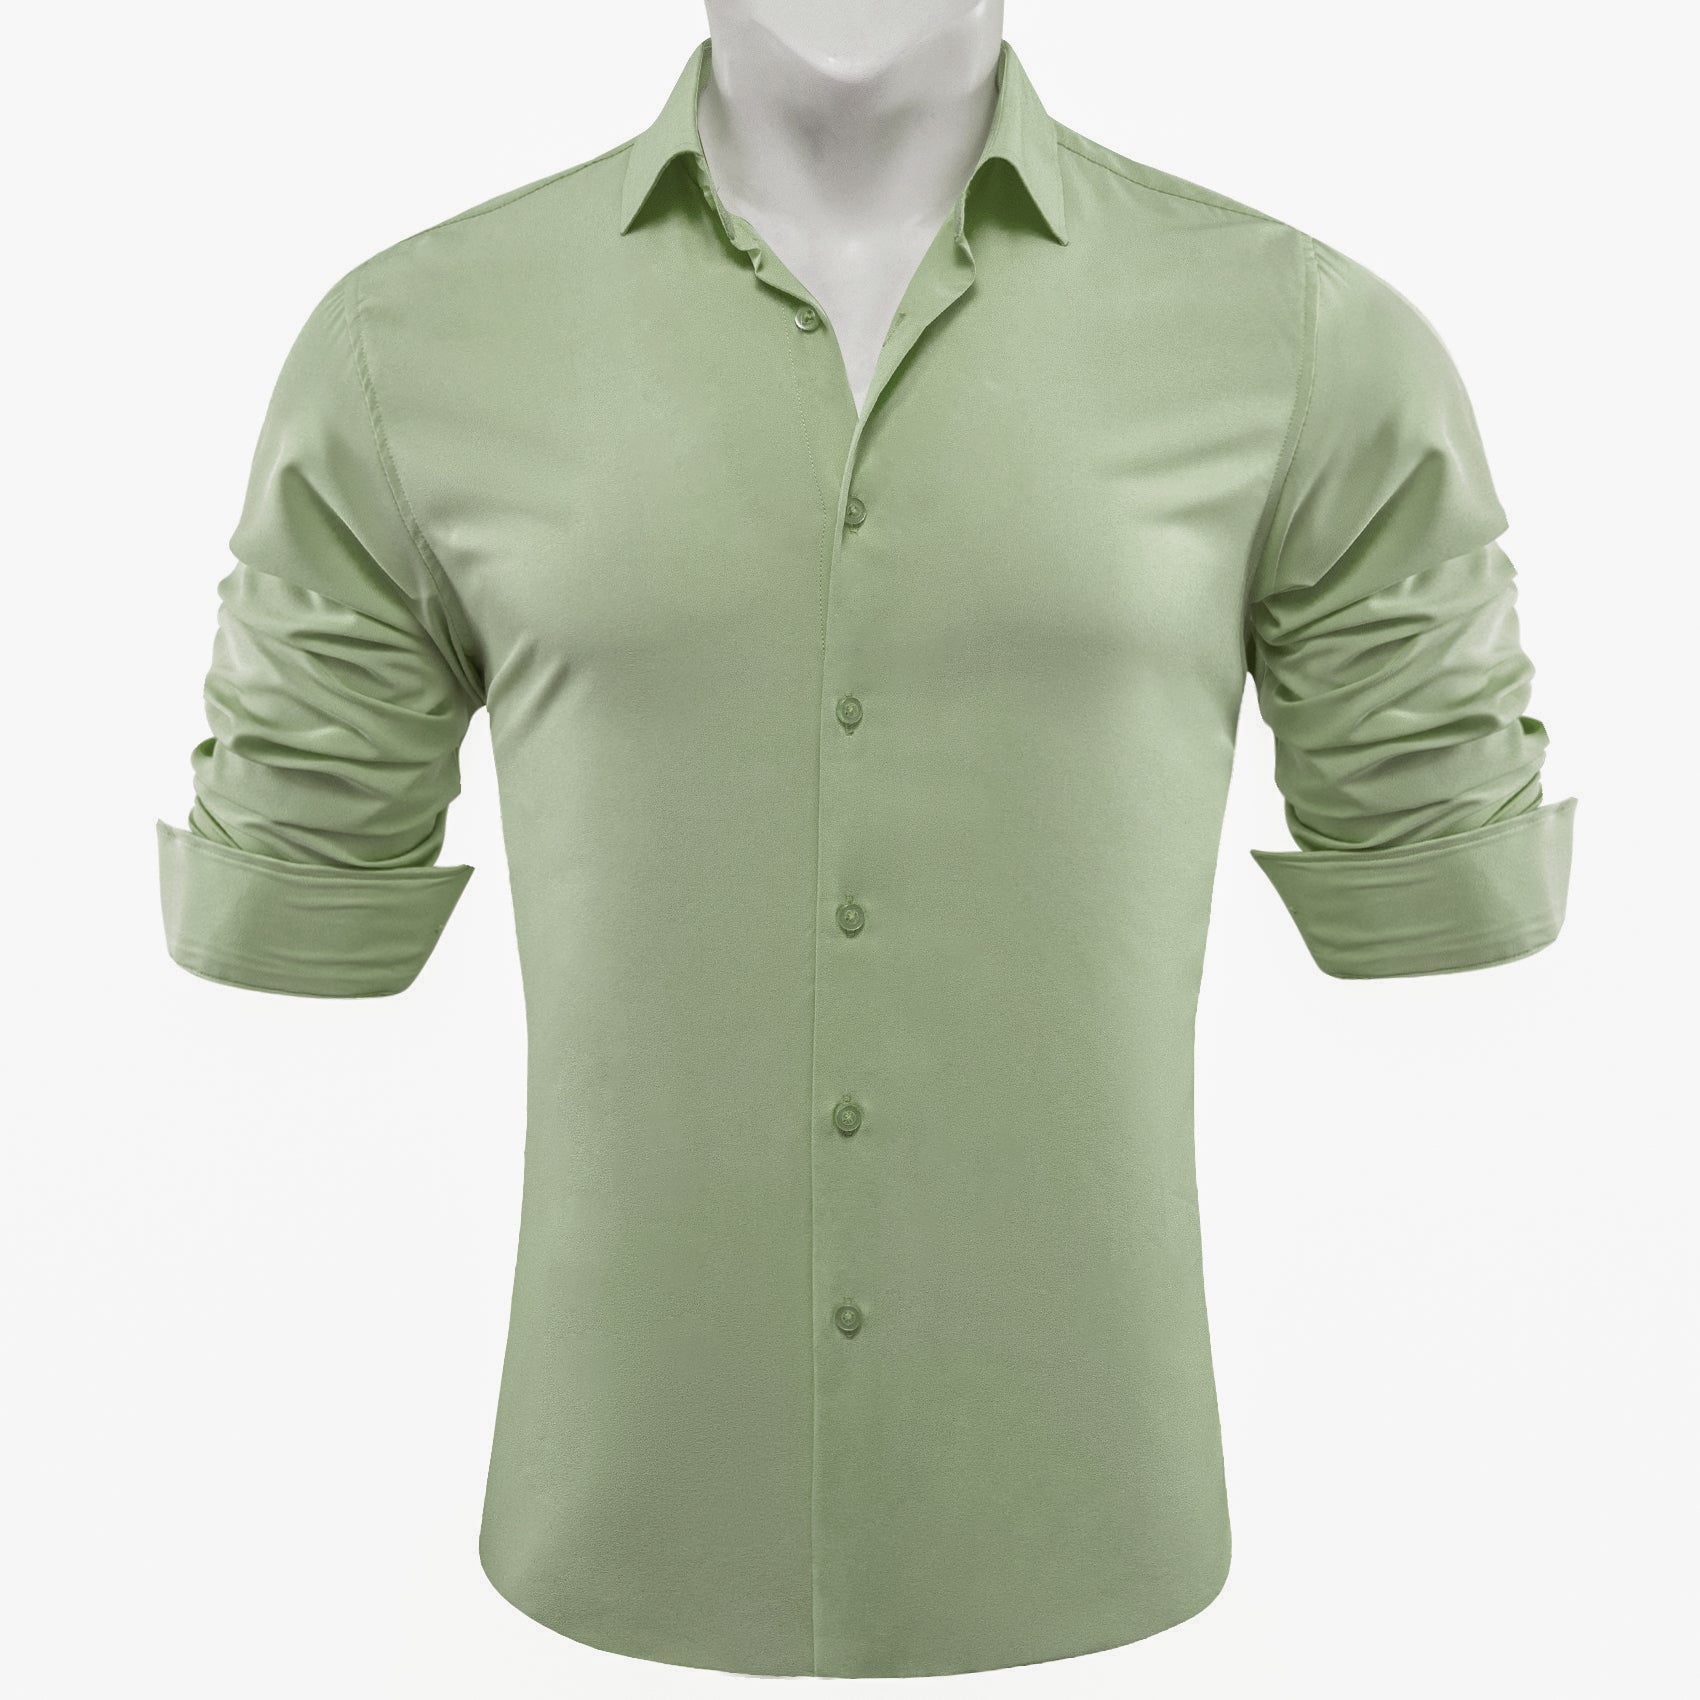 Barry.wang Darkseagreen Solid Silk Shirt